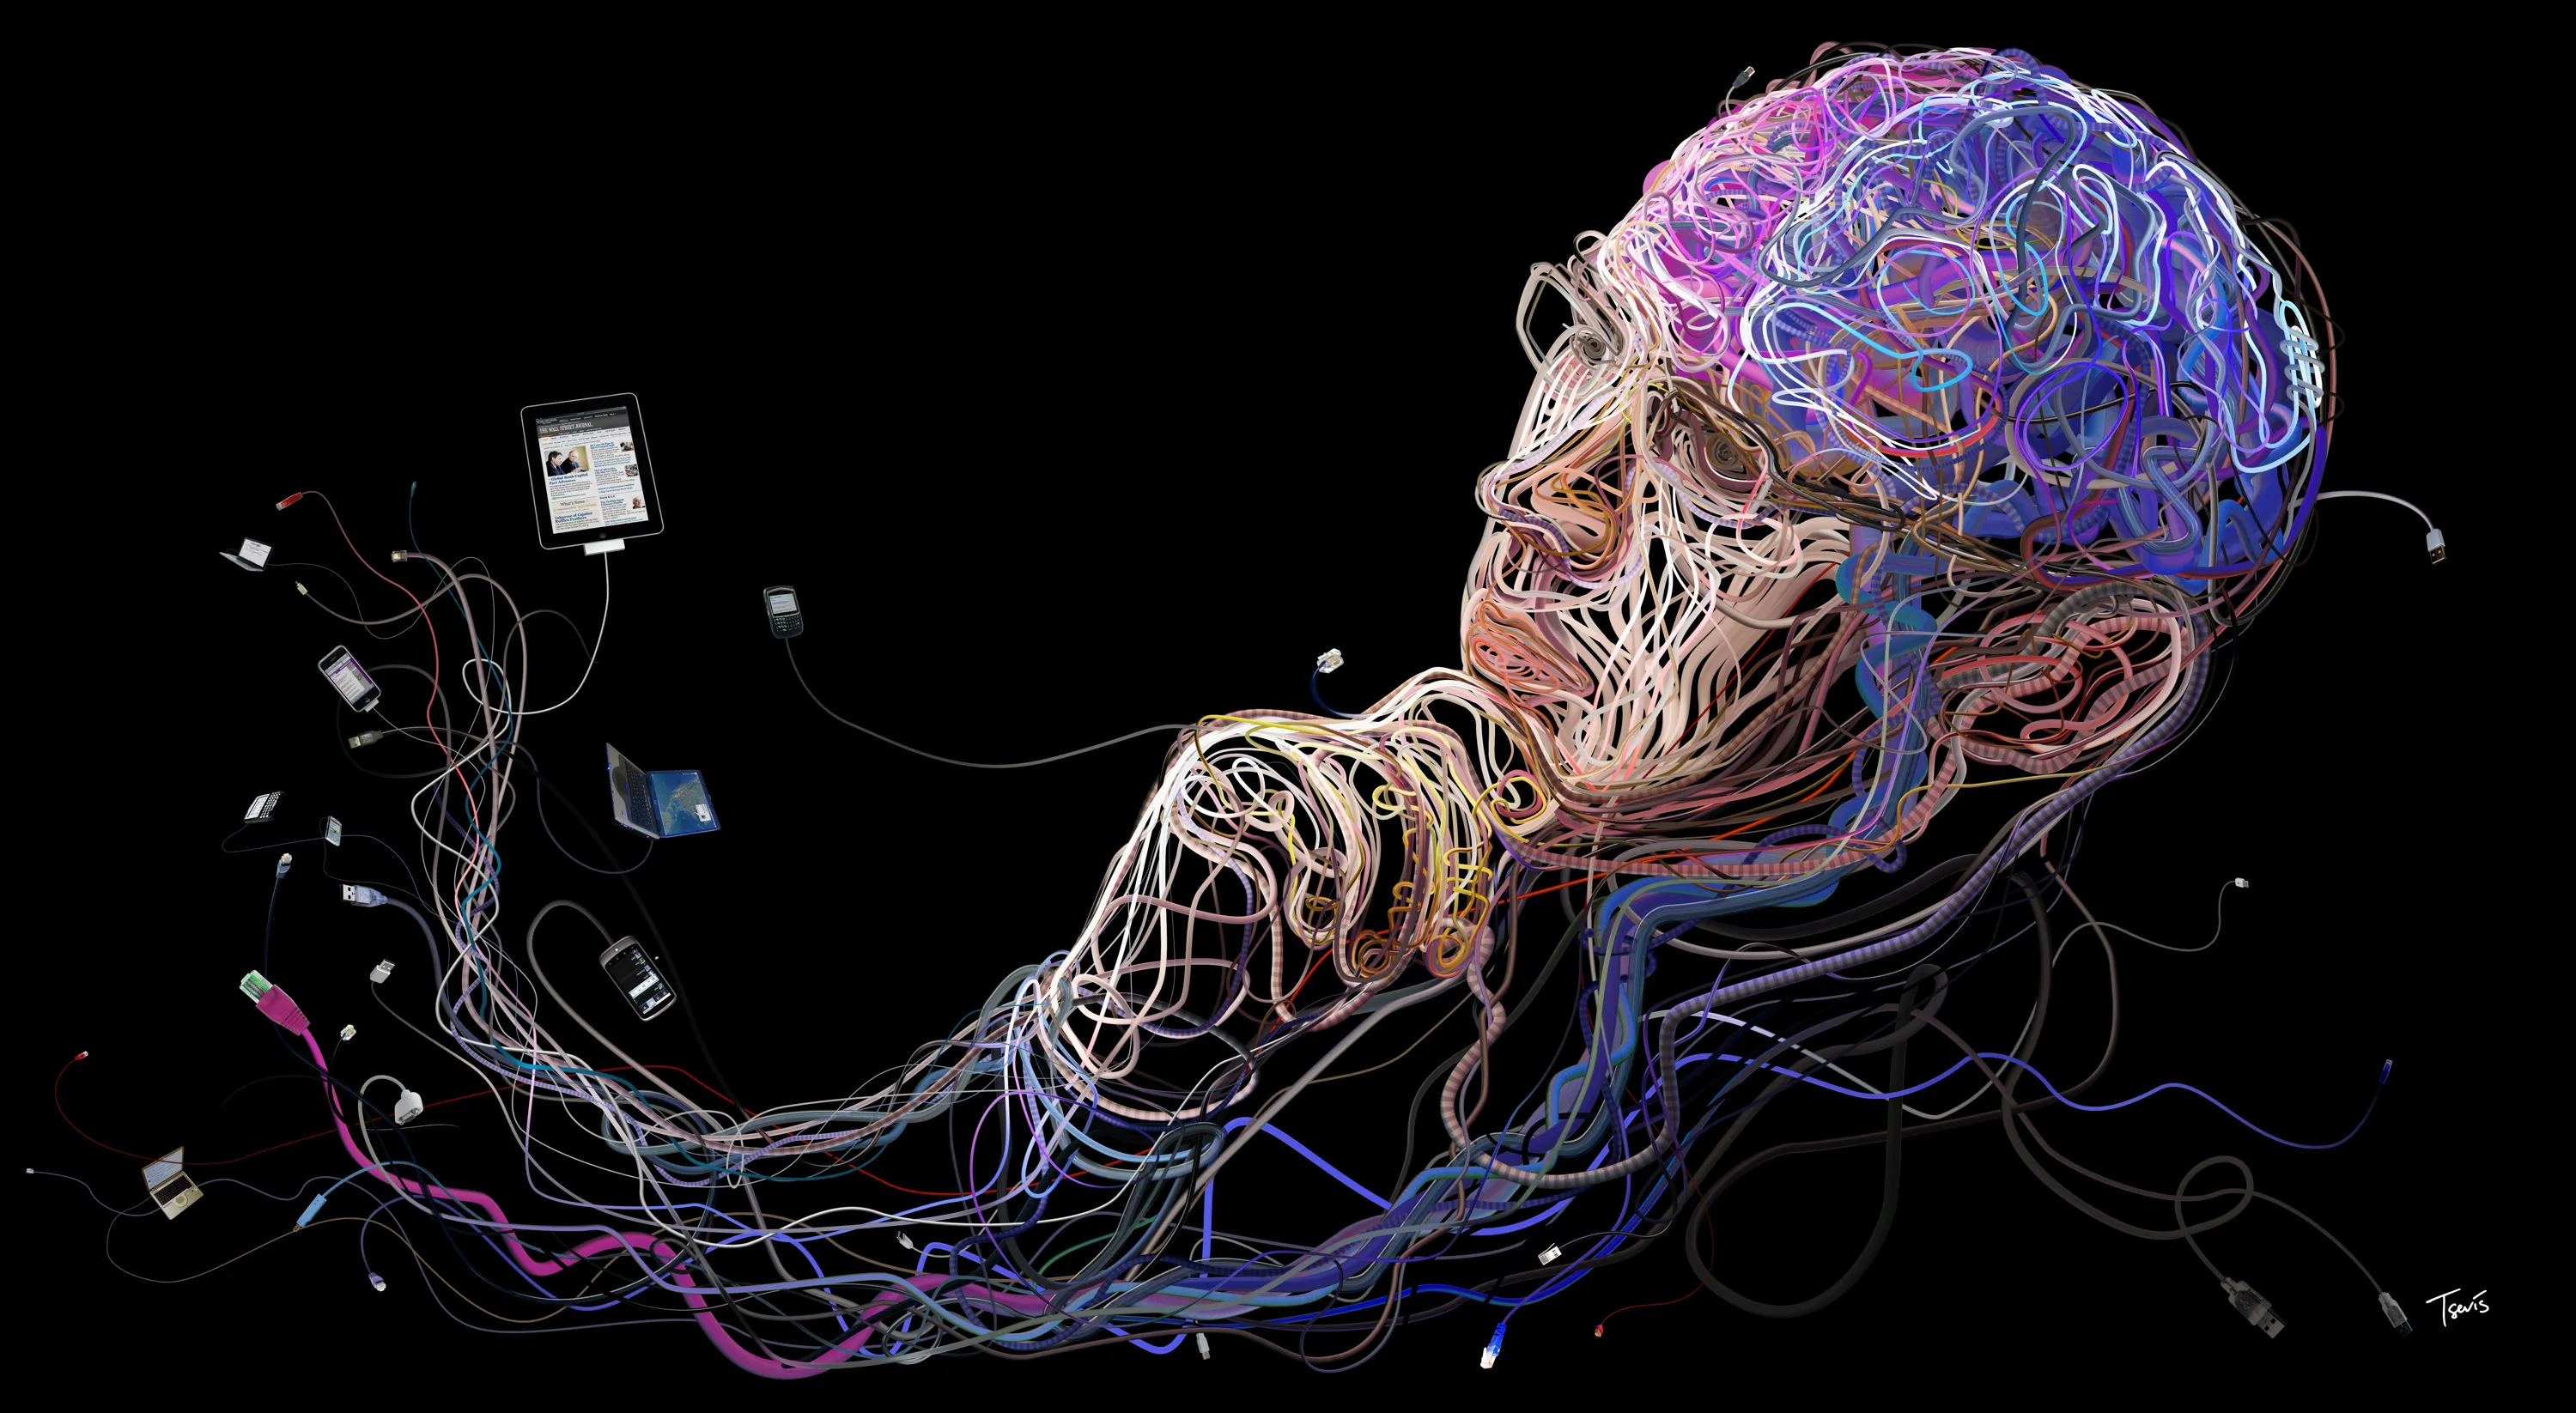 Разрыв знаний. Изображение мозга. Запрограммированный мозг. Визуализация мозга.